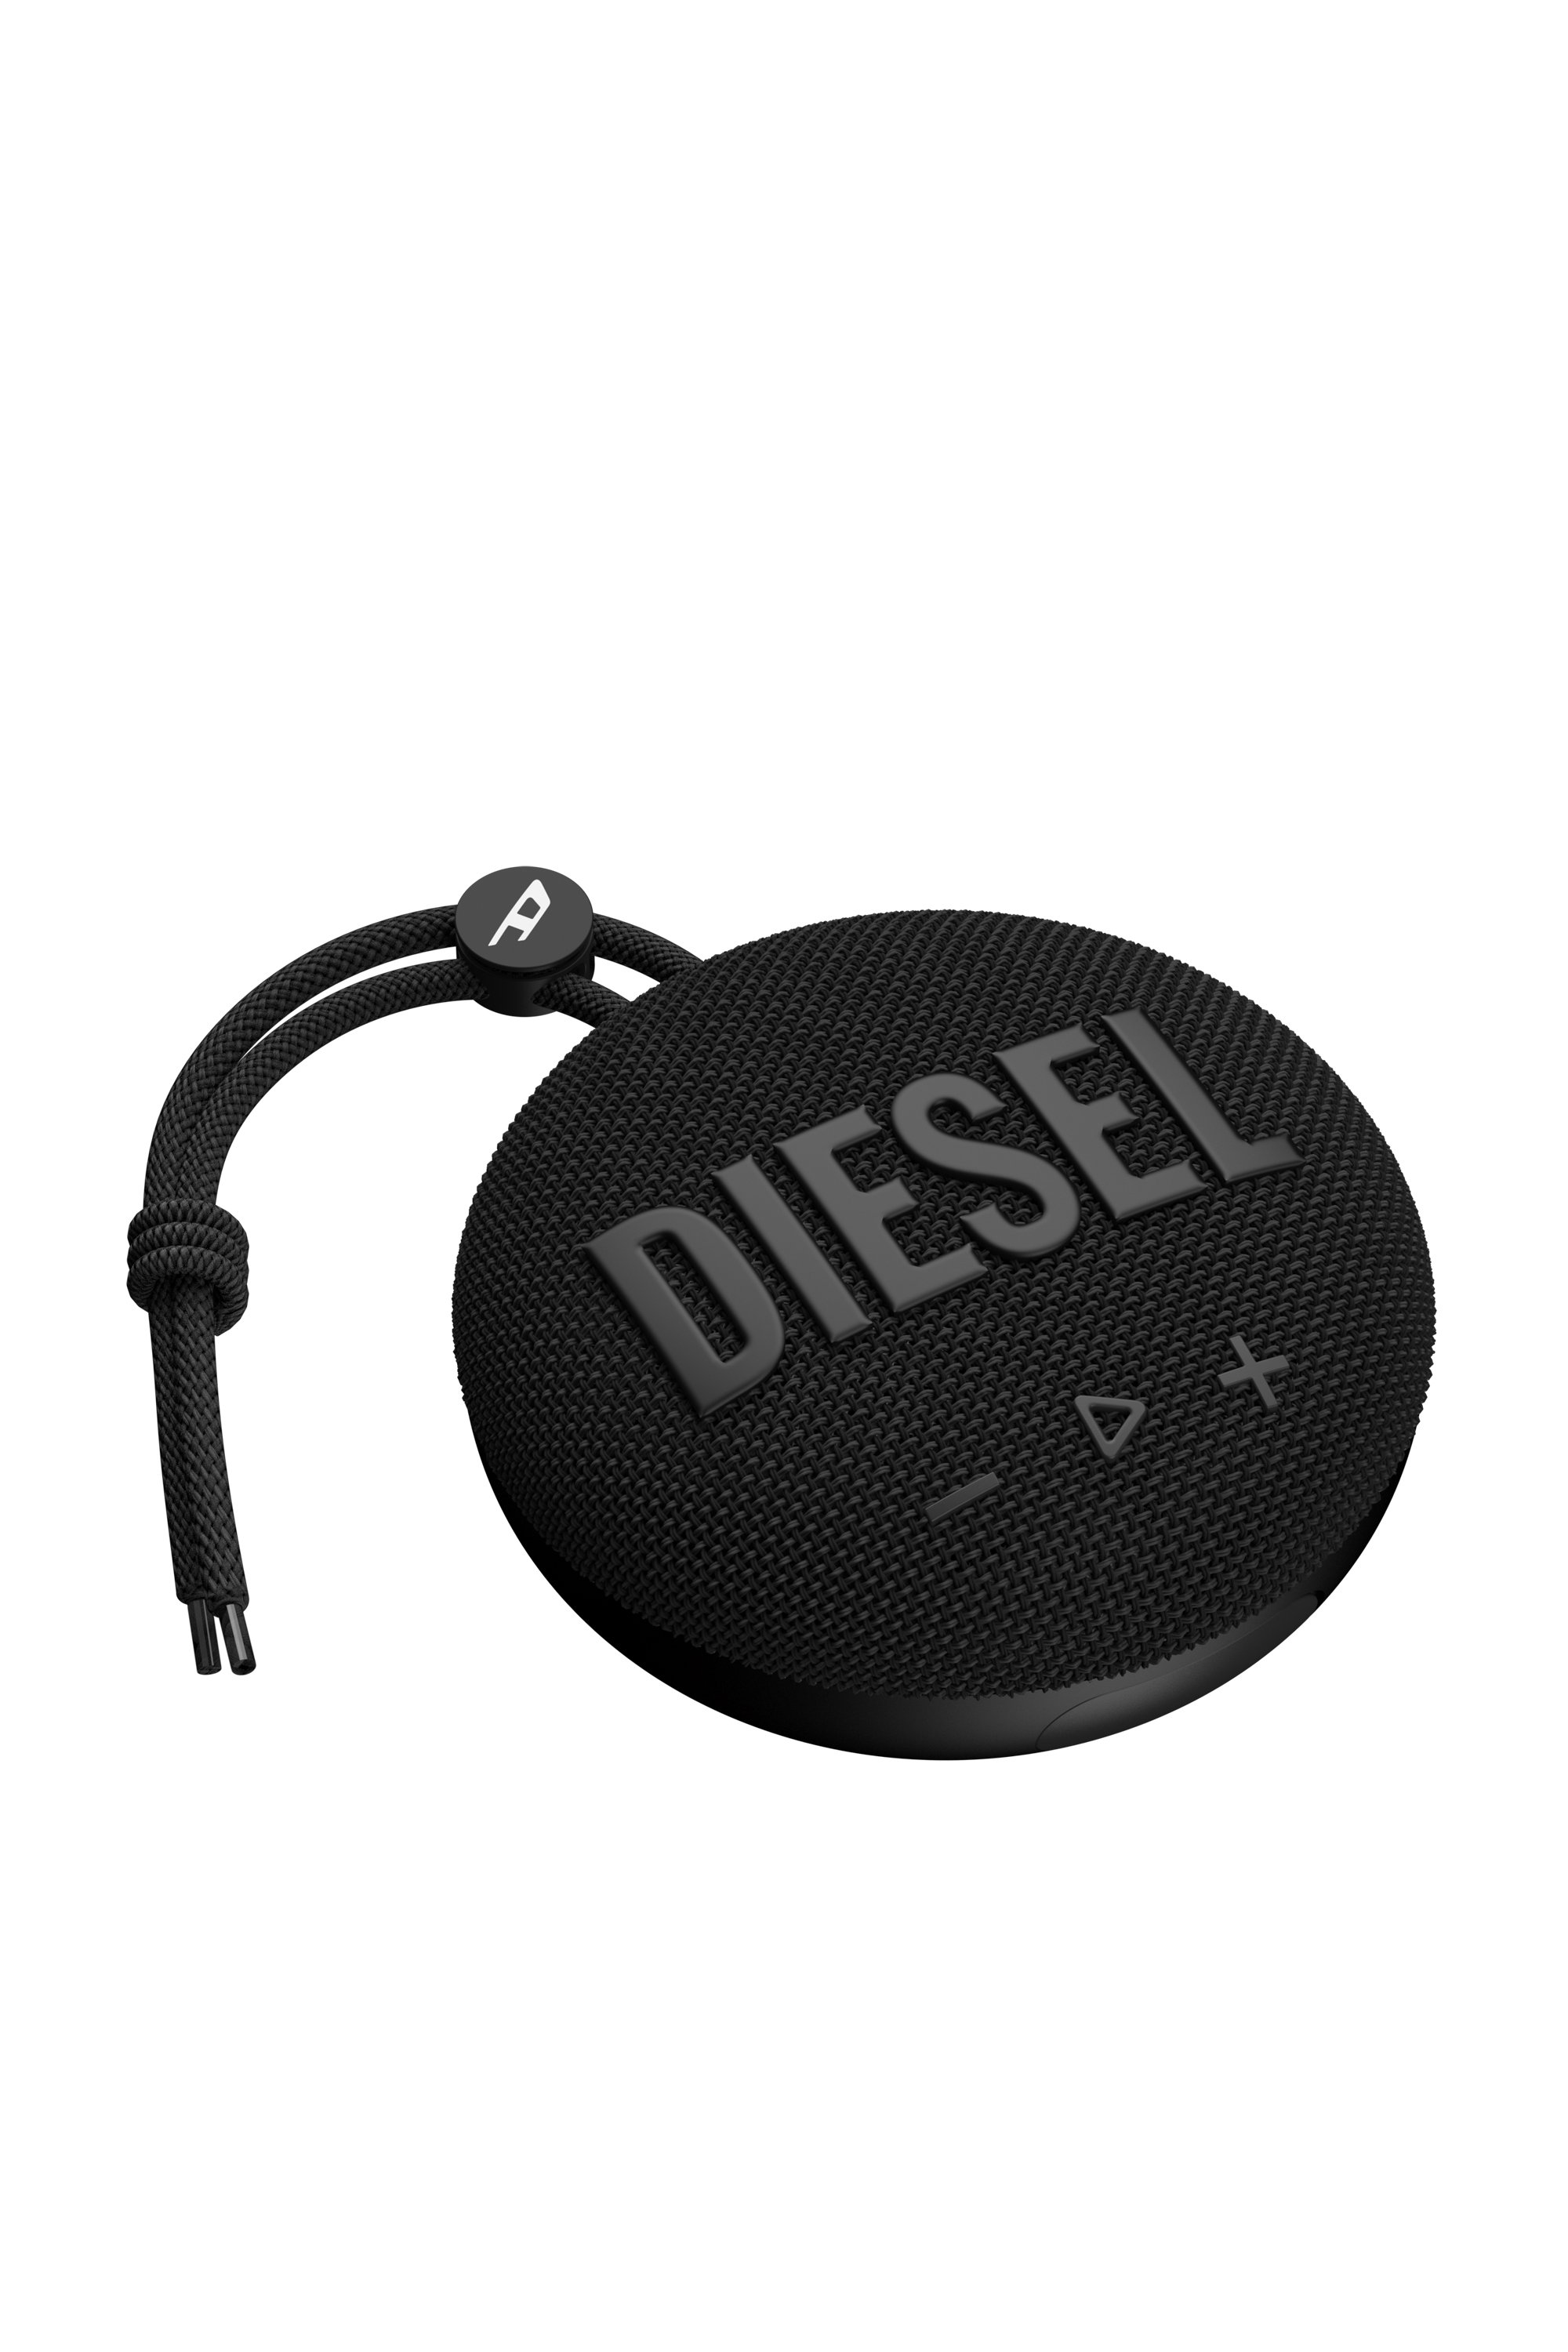 Diesel - 52953 BLUETOOTH SPEAKER, Black - Image 2